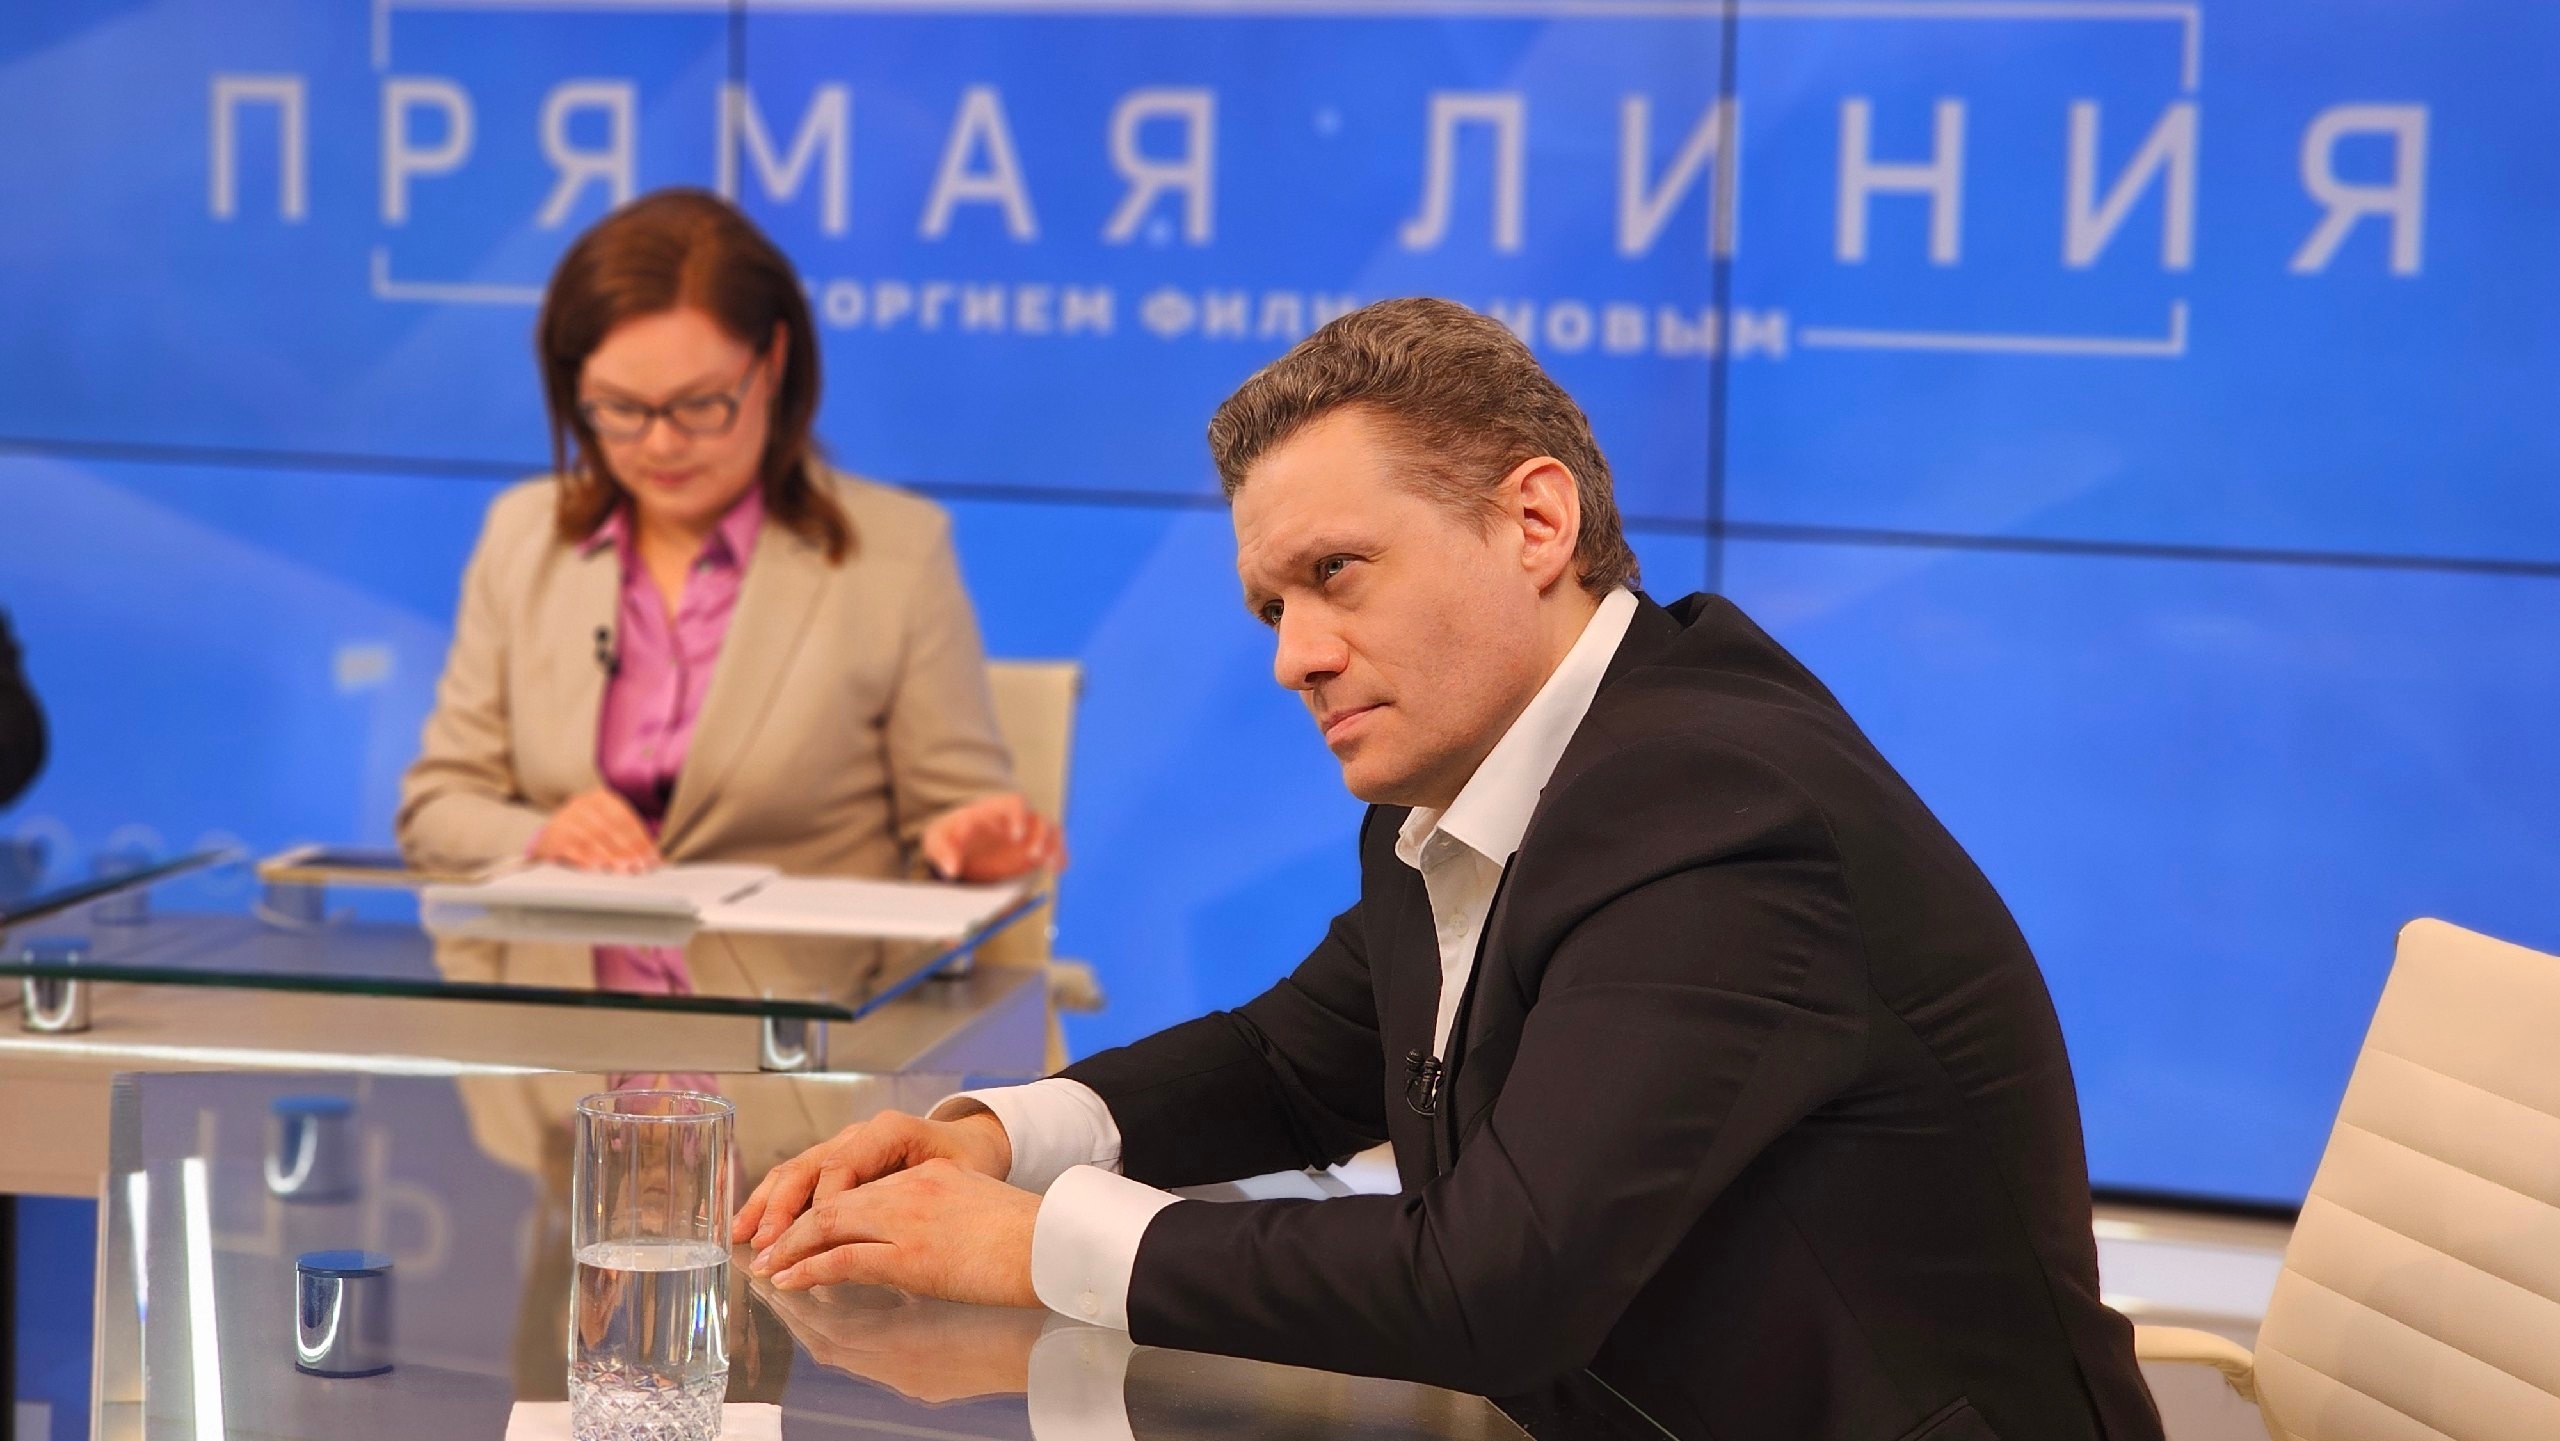 Трансляцию «Прямой линии» с врио губернатора Вологодской области в социальных сетях посмотрели более 100 тысяч зрителей.